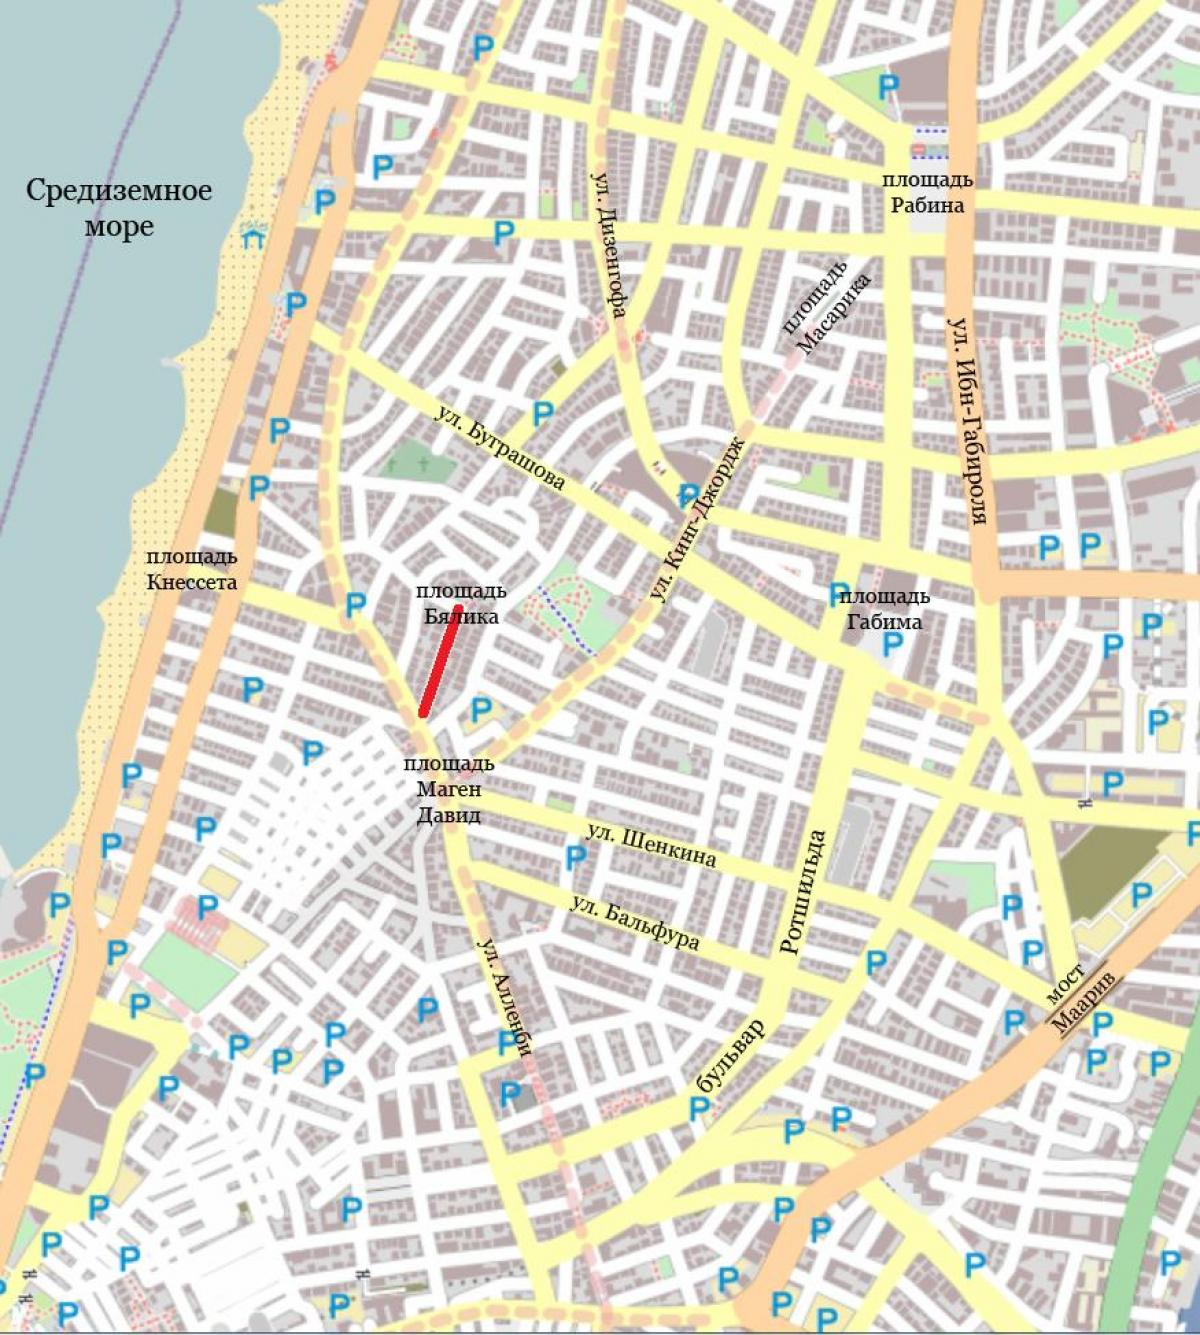 خريطة الشارع من تل أبيب في إسرائيل